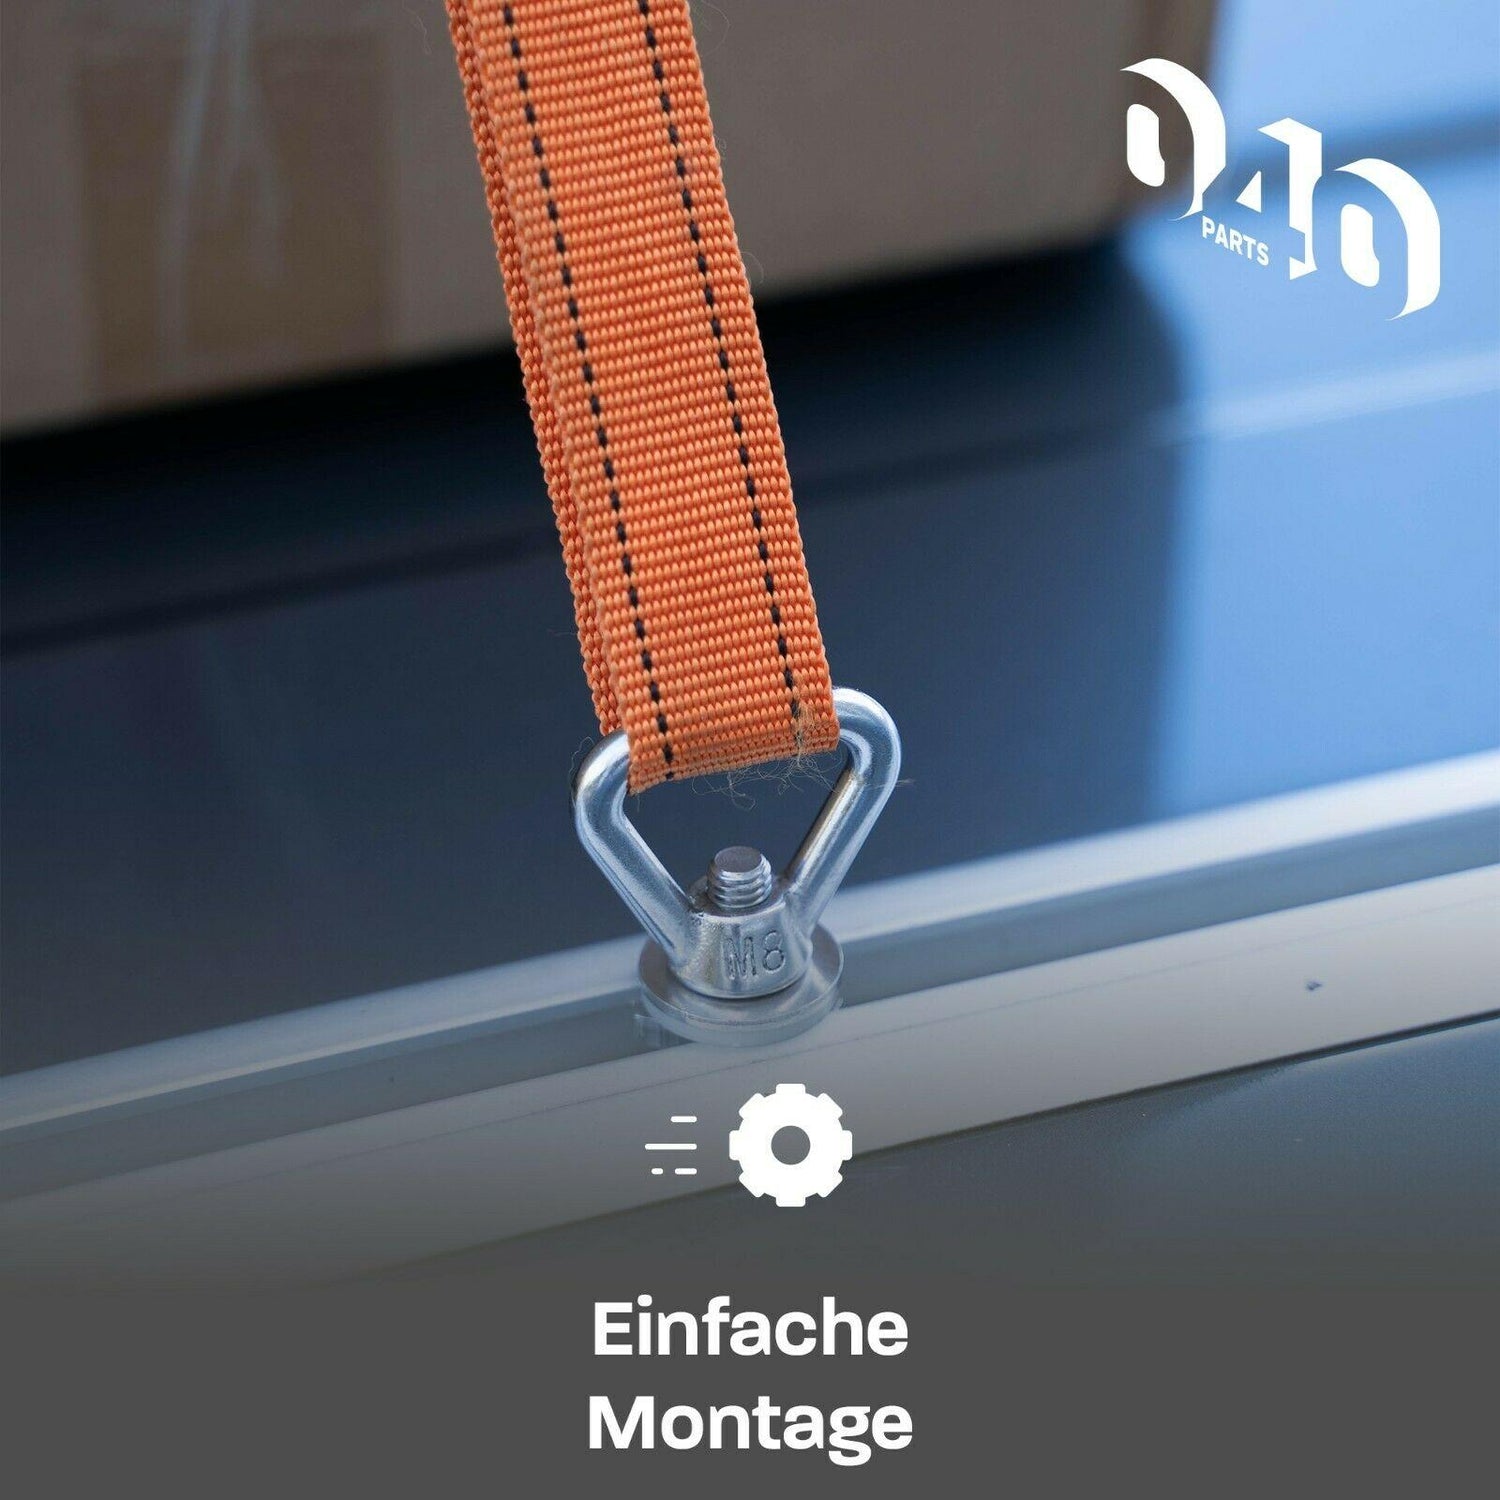 040Parts Edelstahl Zurrösen 4er Set für Dach-Schienen mit C-Profil für VW T5 T6 - Mixcover - 040 parts